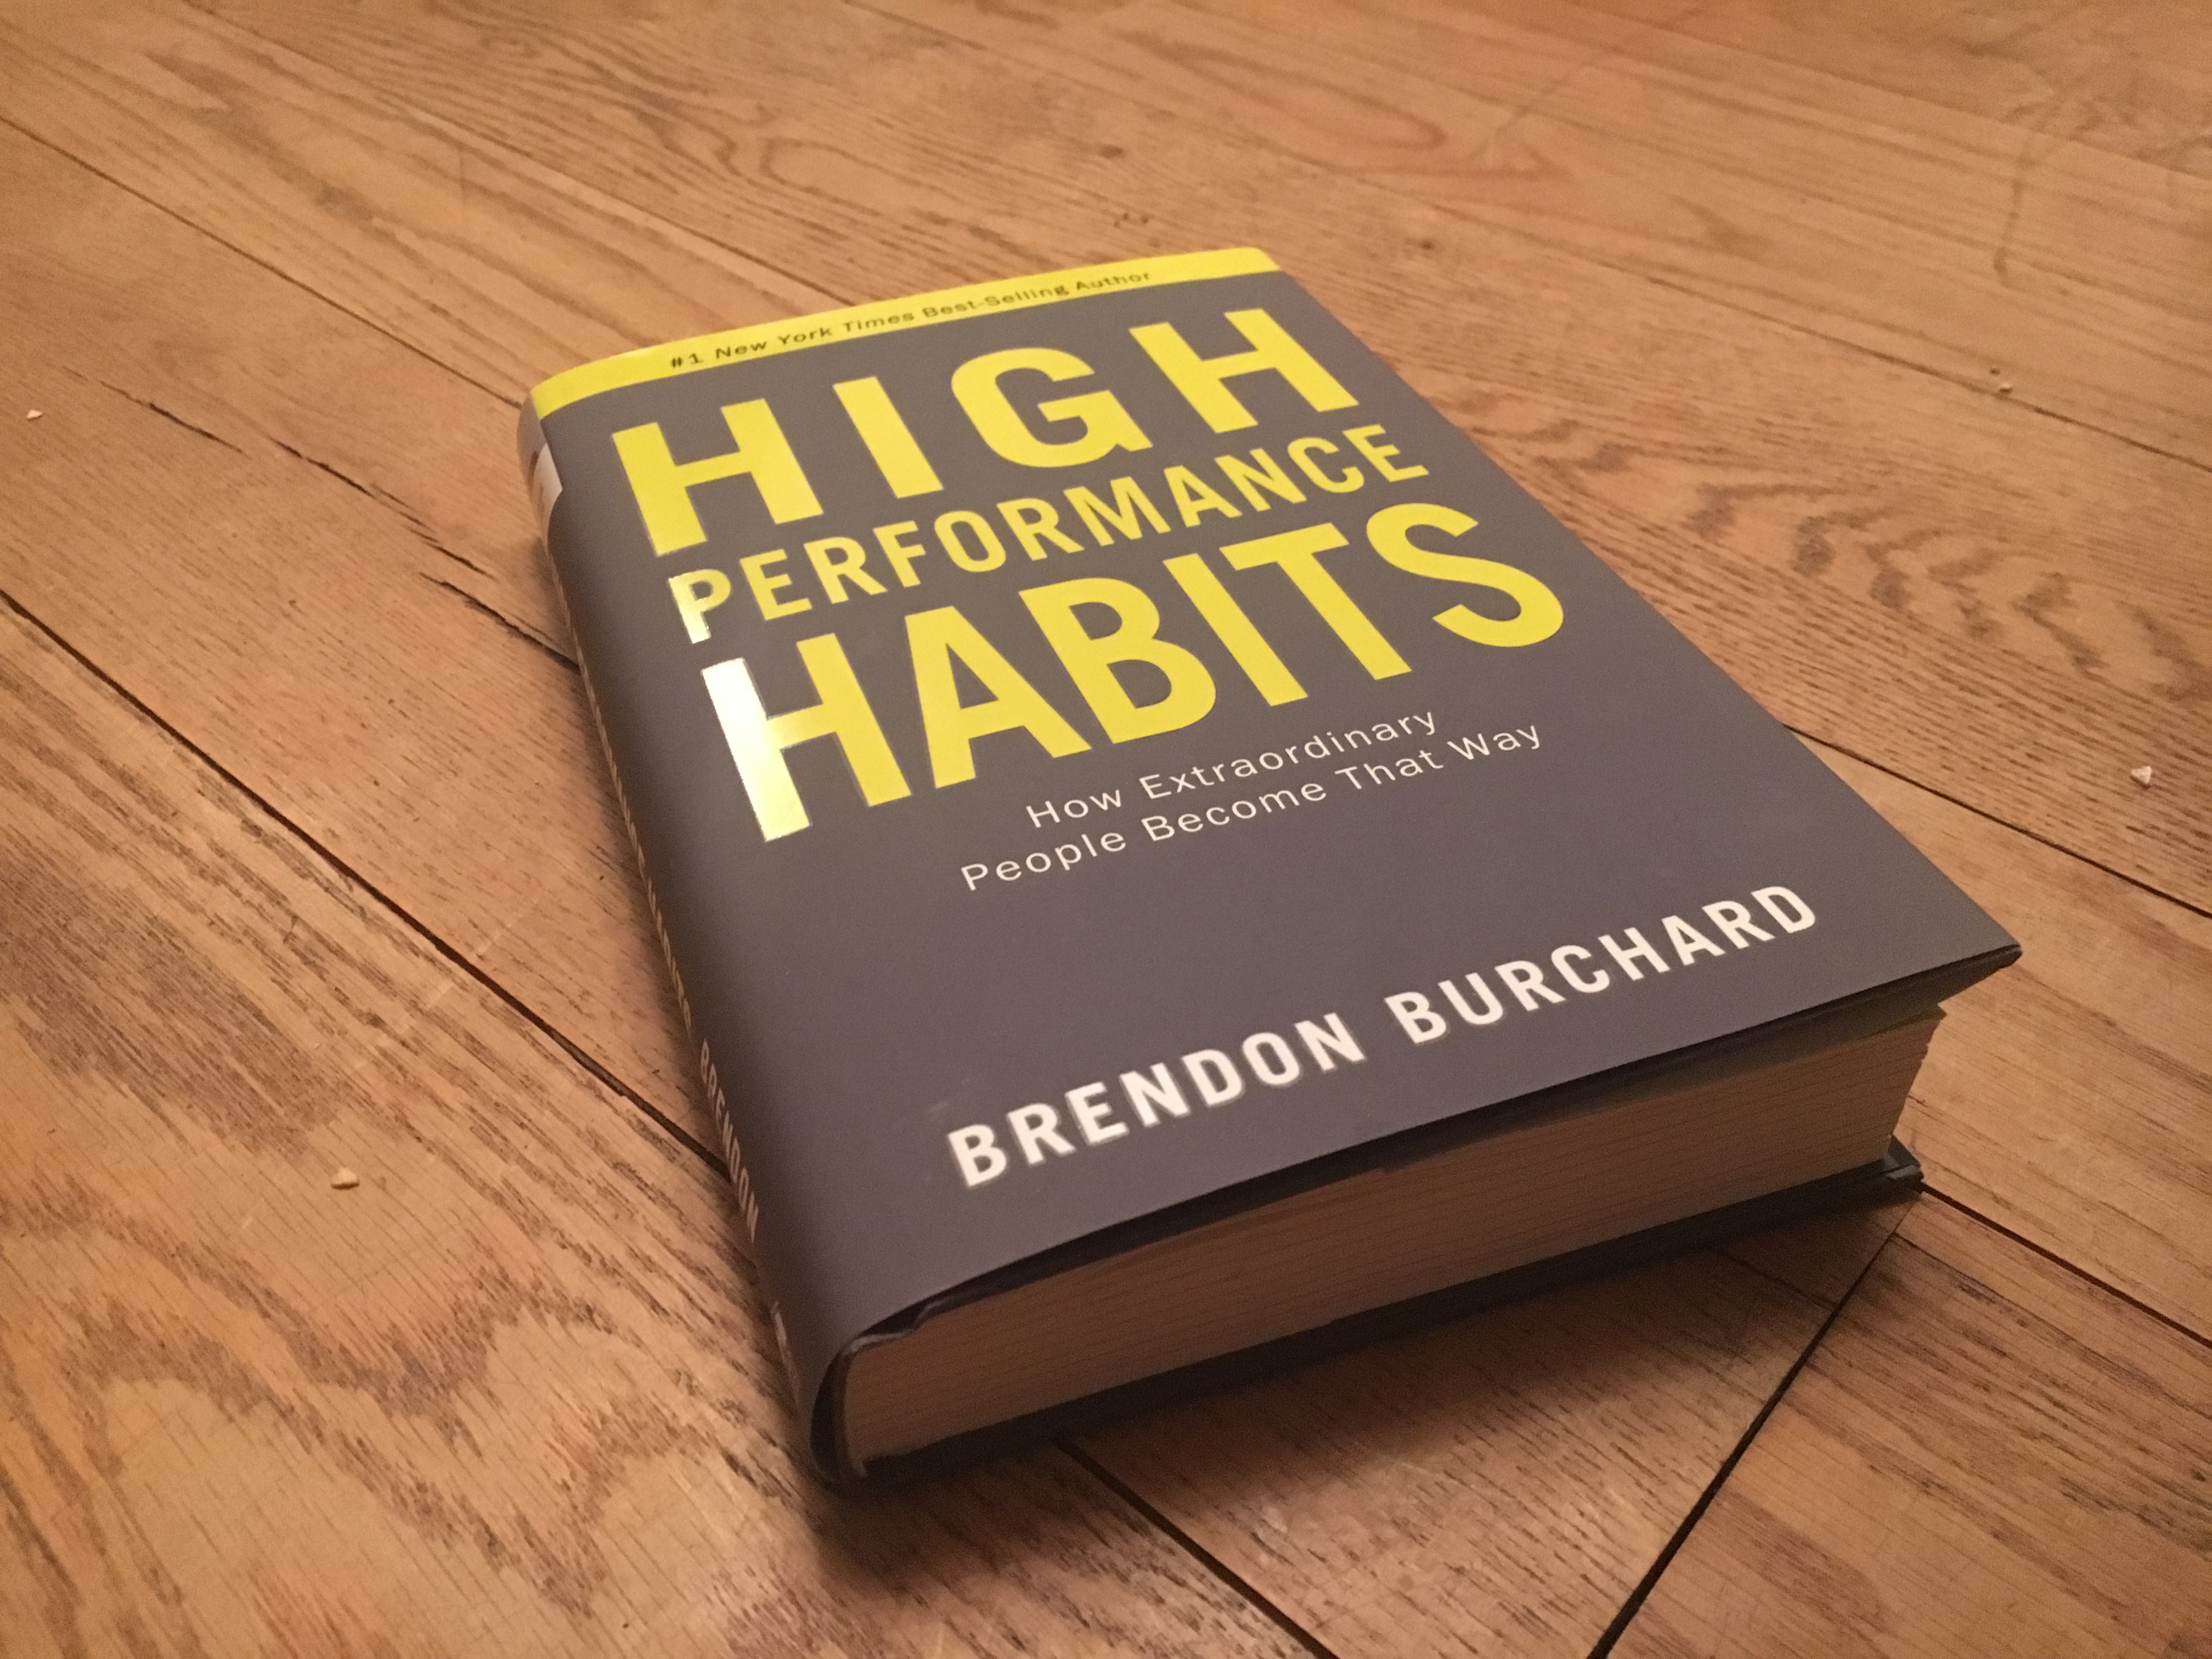 Boek van brendon burchard "High preformance habit"